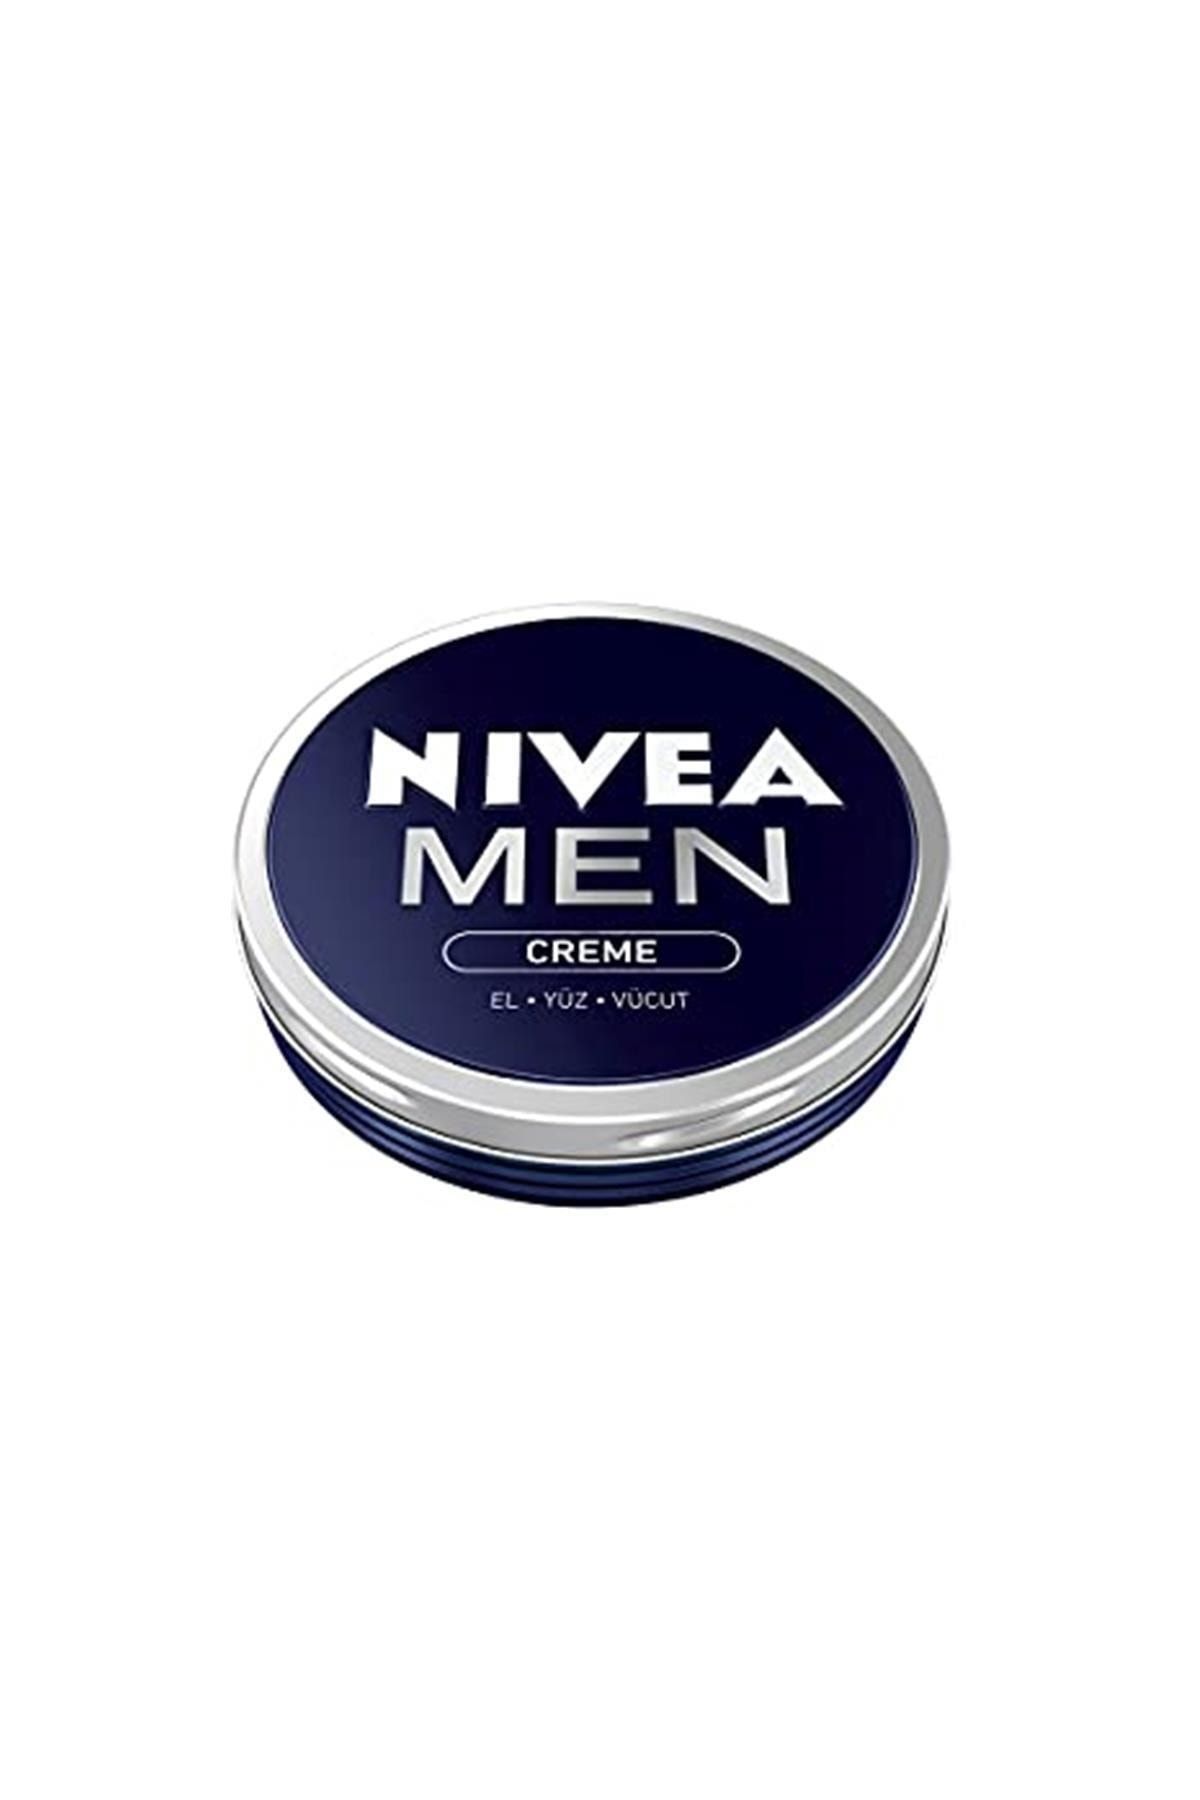 NIVEA Men Creme Erkek Bakım Kremi 30 Ml, El, Yüz Ve Vücut Nemlendirici Krem, Hızlı Emilir, Yapışkan